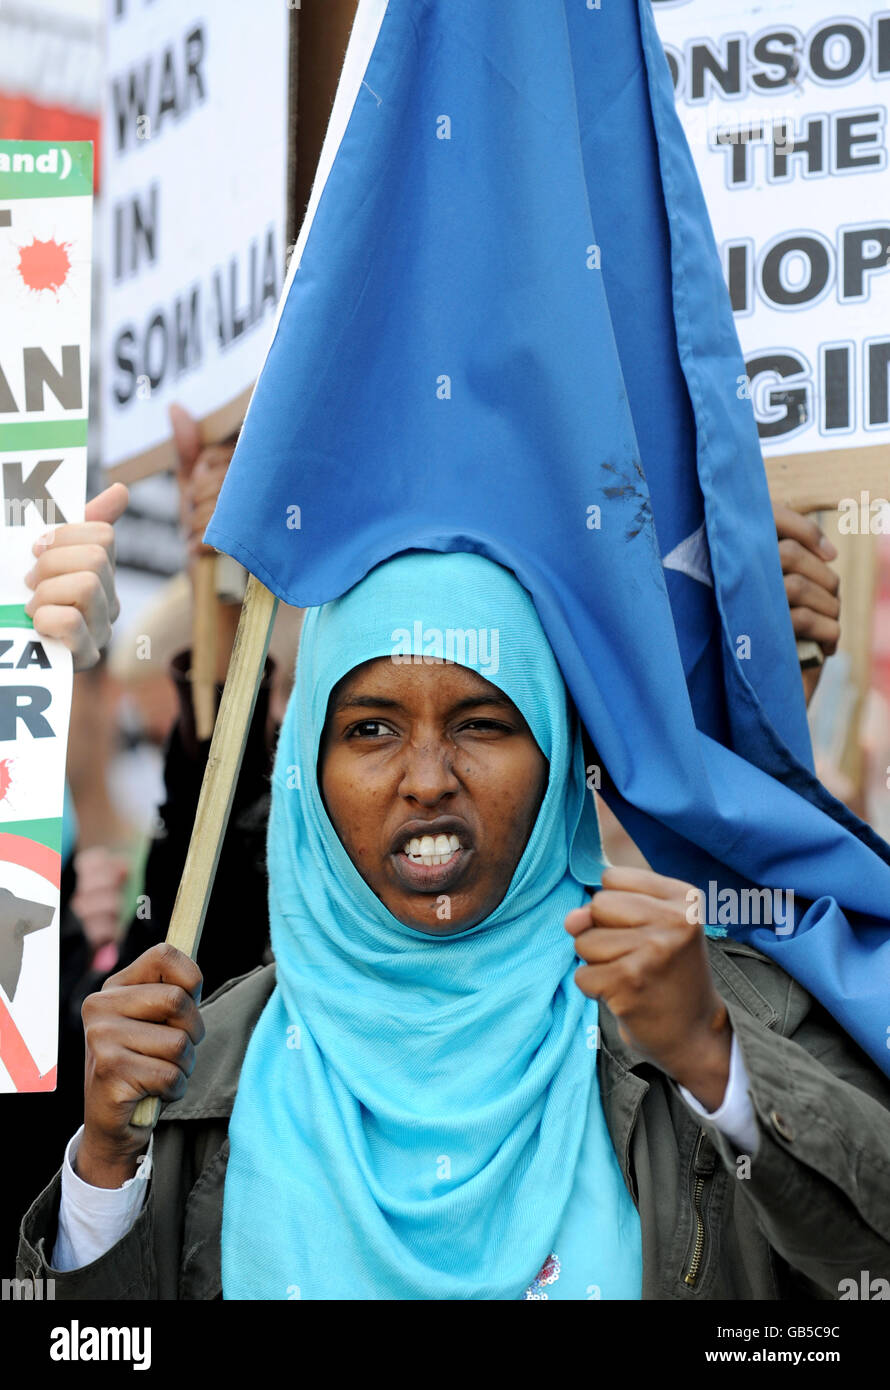 Una mujer participa en una protesta contra la guerra en Manchester Foto de stock